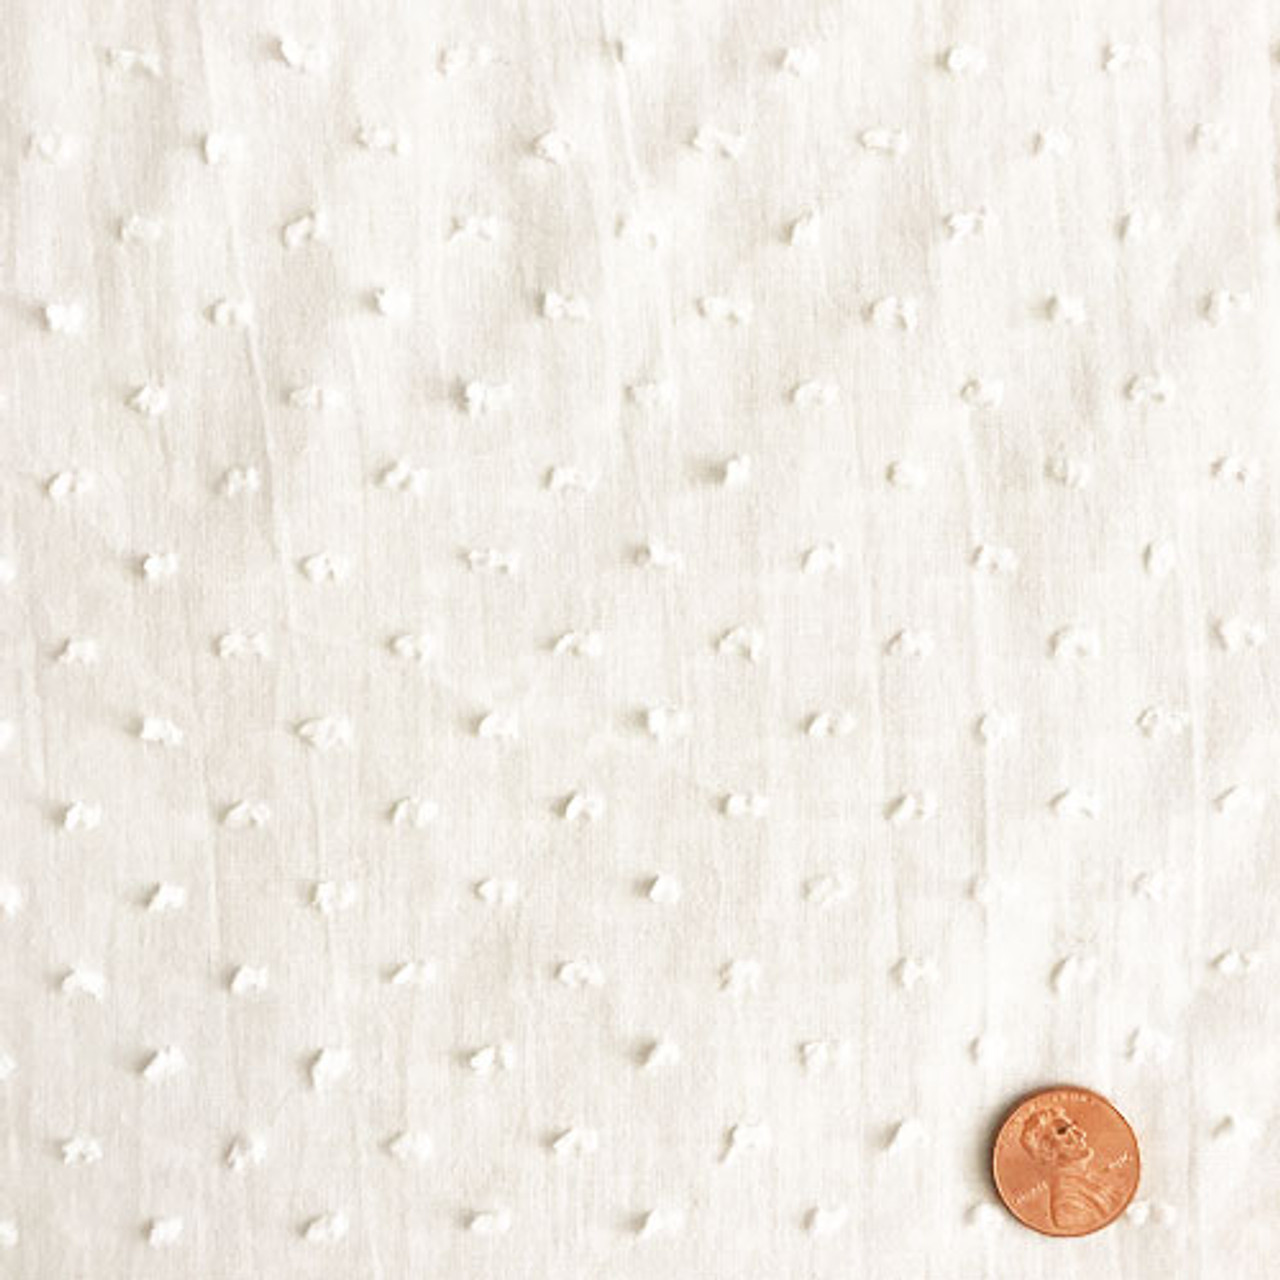 White Swiss Dot Fabric